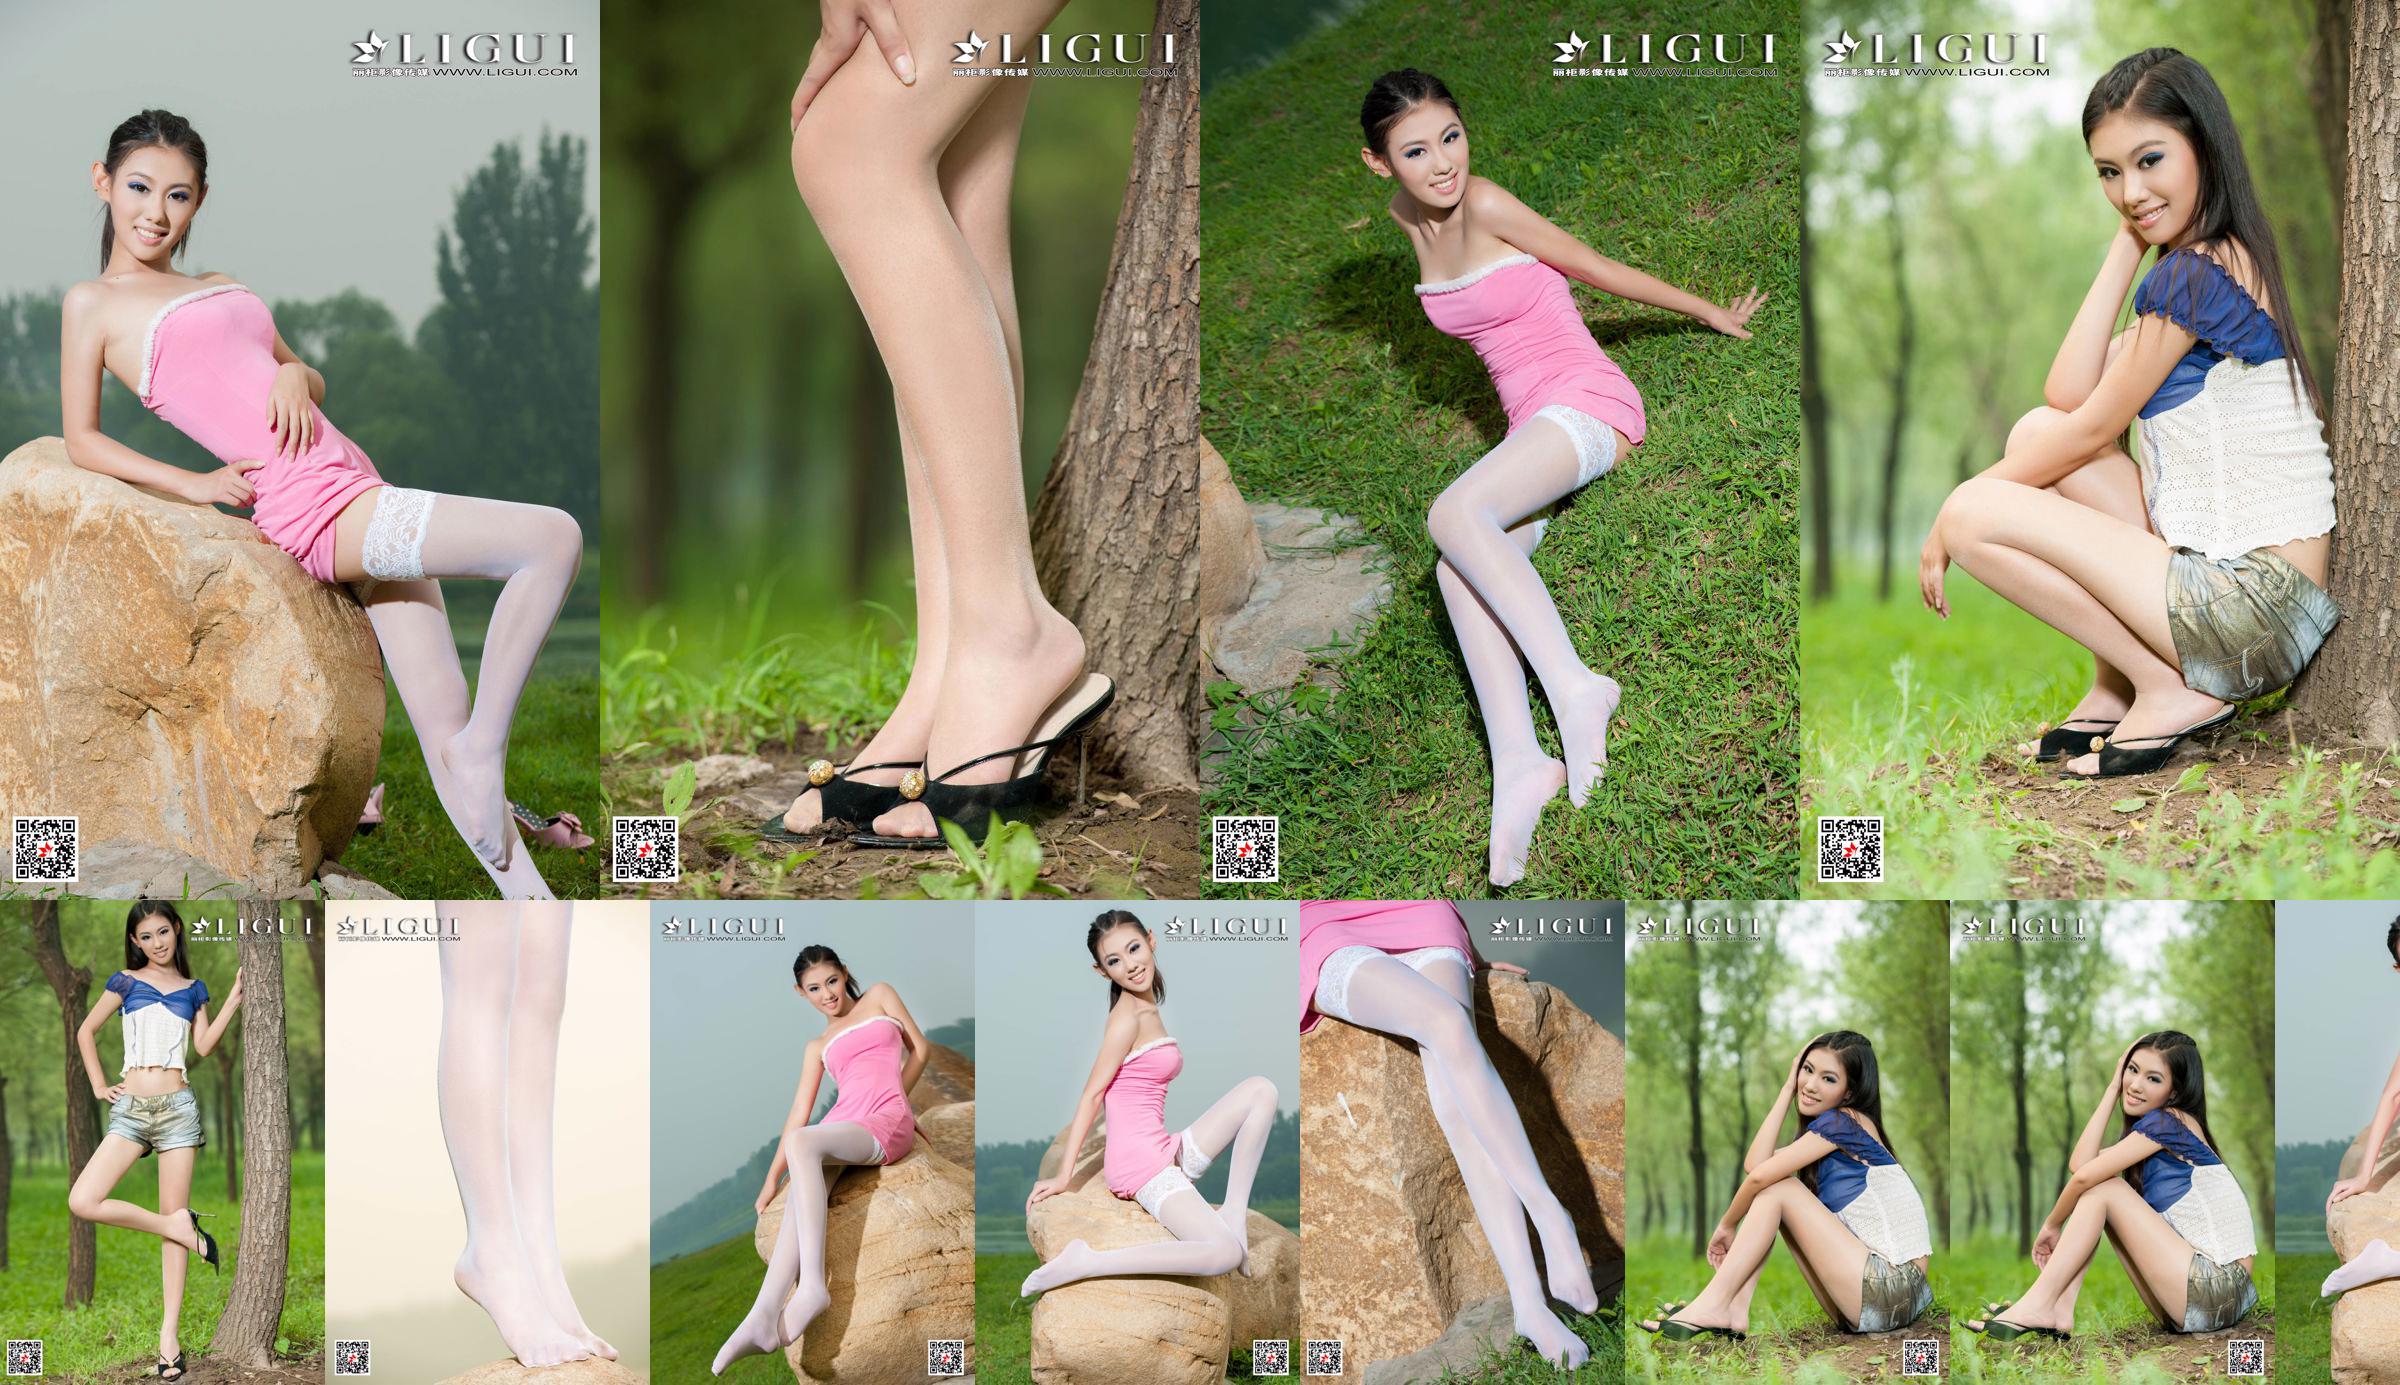 [丽 柜 Ligui] Modello Wei Ling "Long Leg Girl" Belle gambe No.ba83f3 Pagina 1